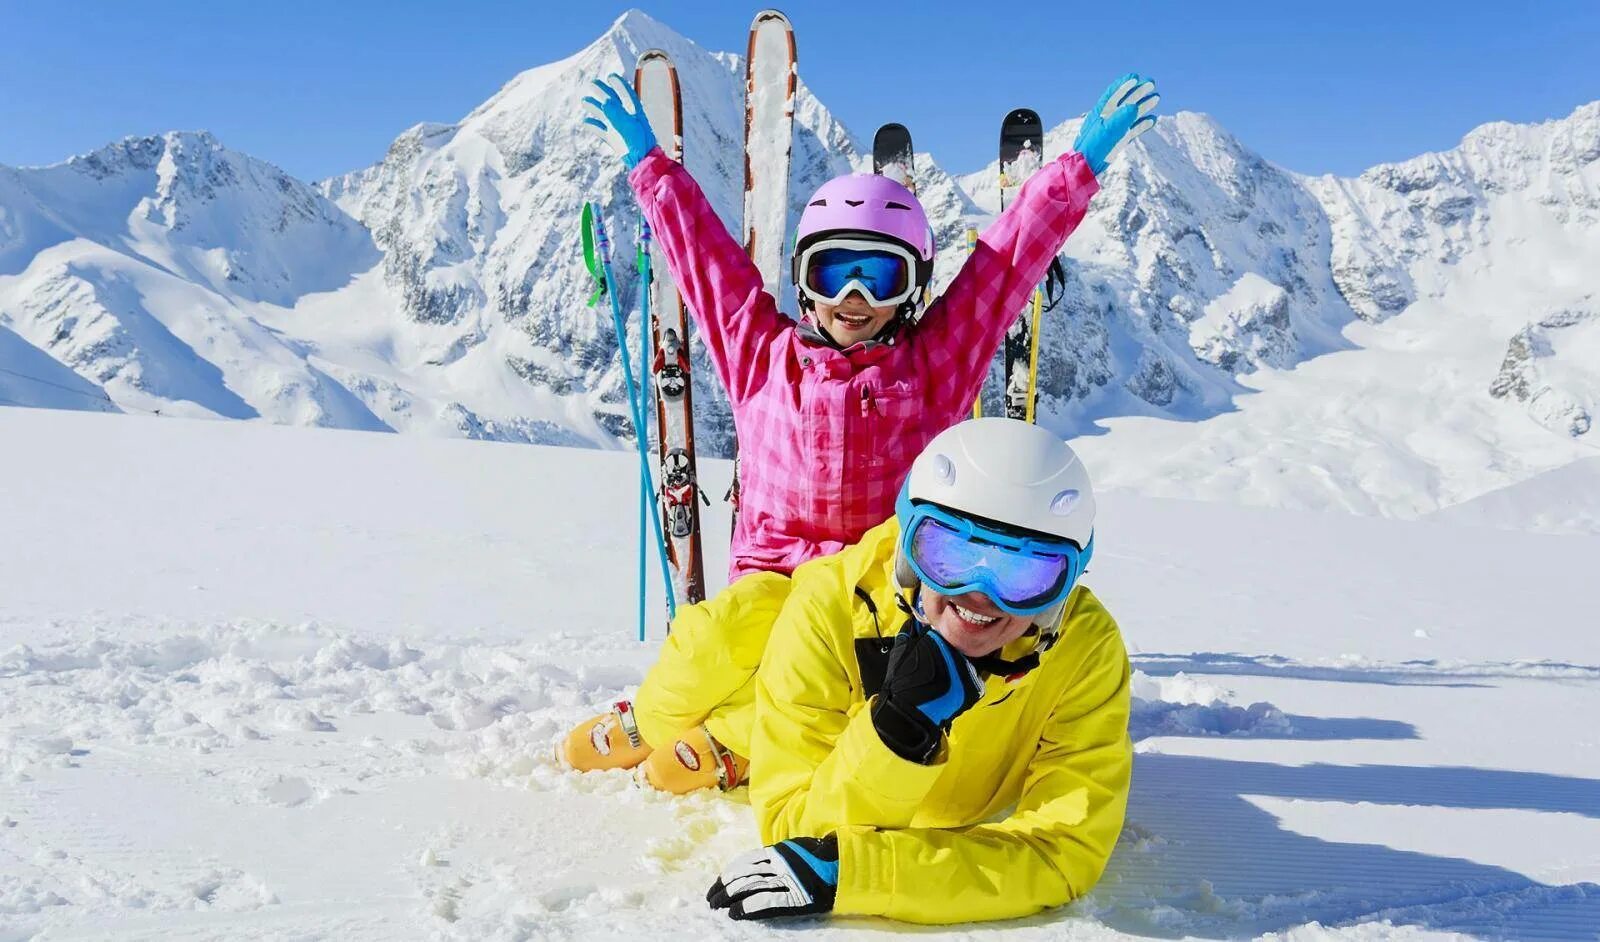 Катание на горнолыжном курорте. Дети на горнолыжном курорте. Катание на лыжах. Дети в горах зимой. Дети в горах на лыжах.